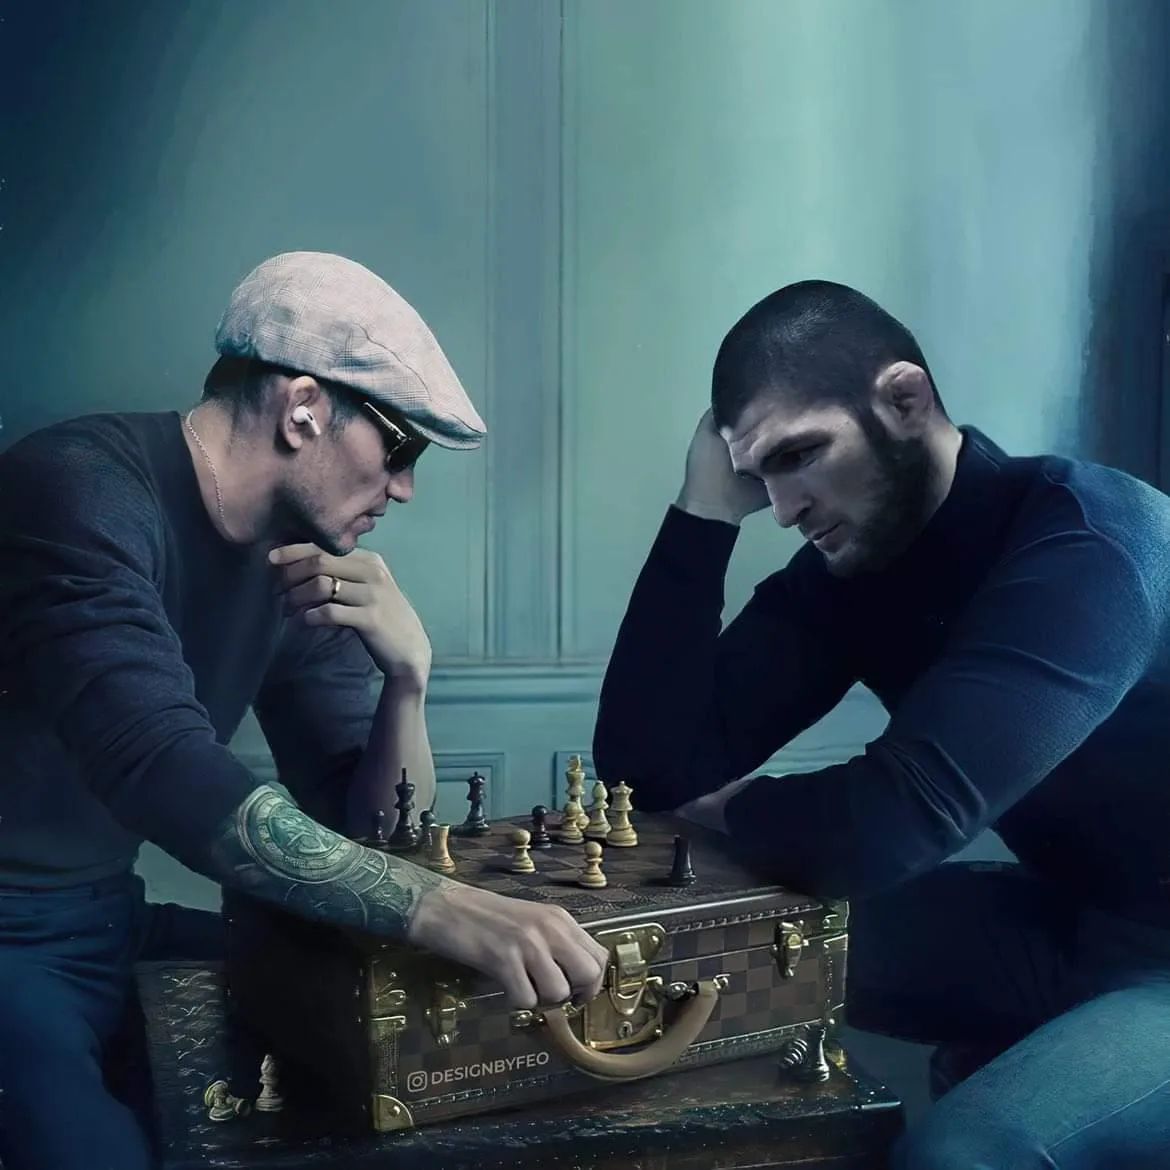 Матч мечты. Якутский дизайнер изобразил Хабиба и Тони, играющими в шахматы